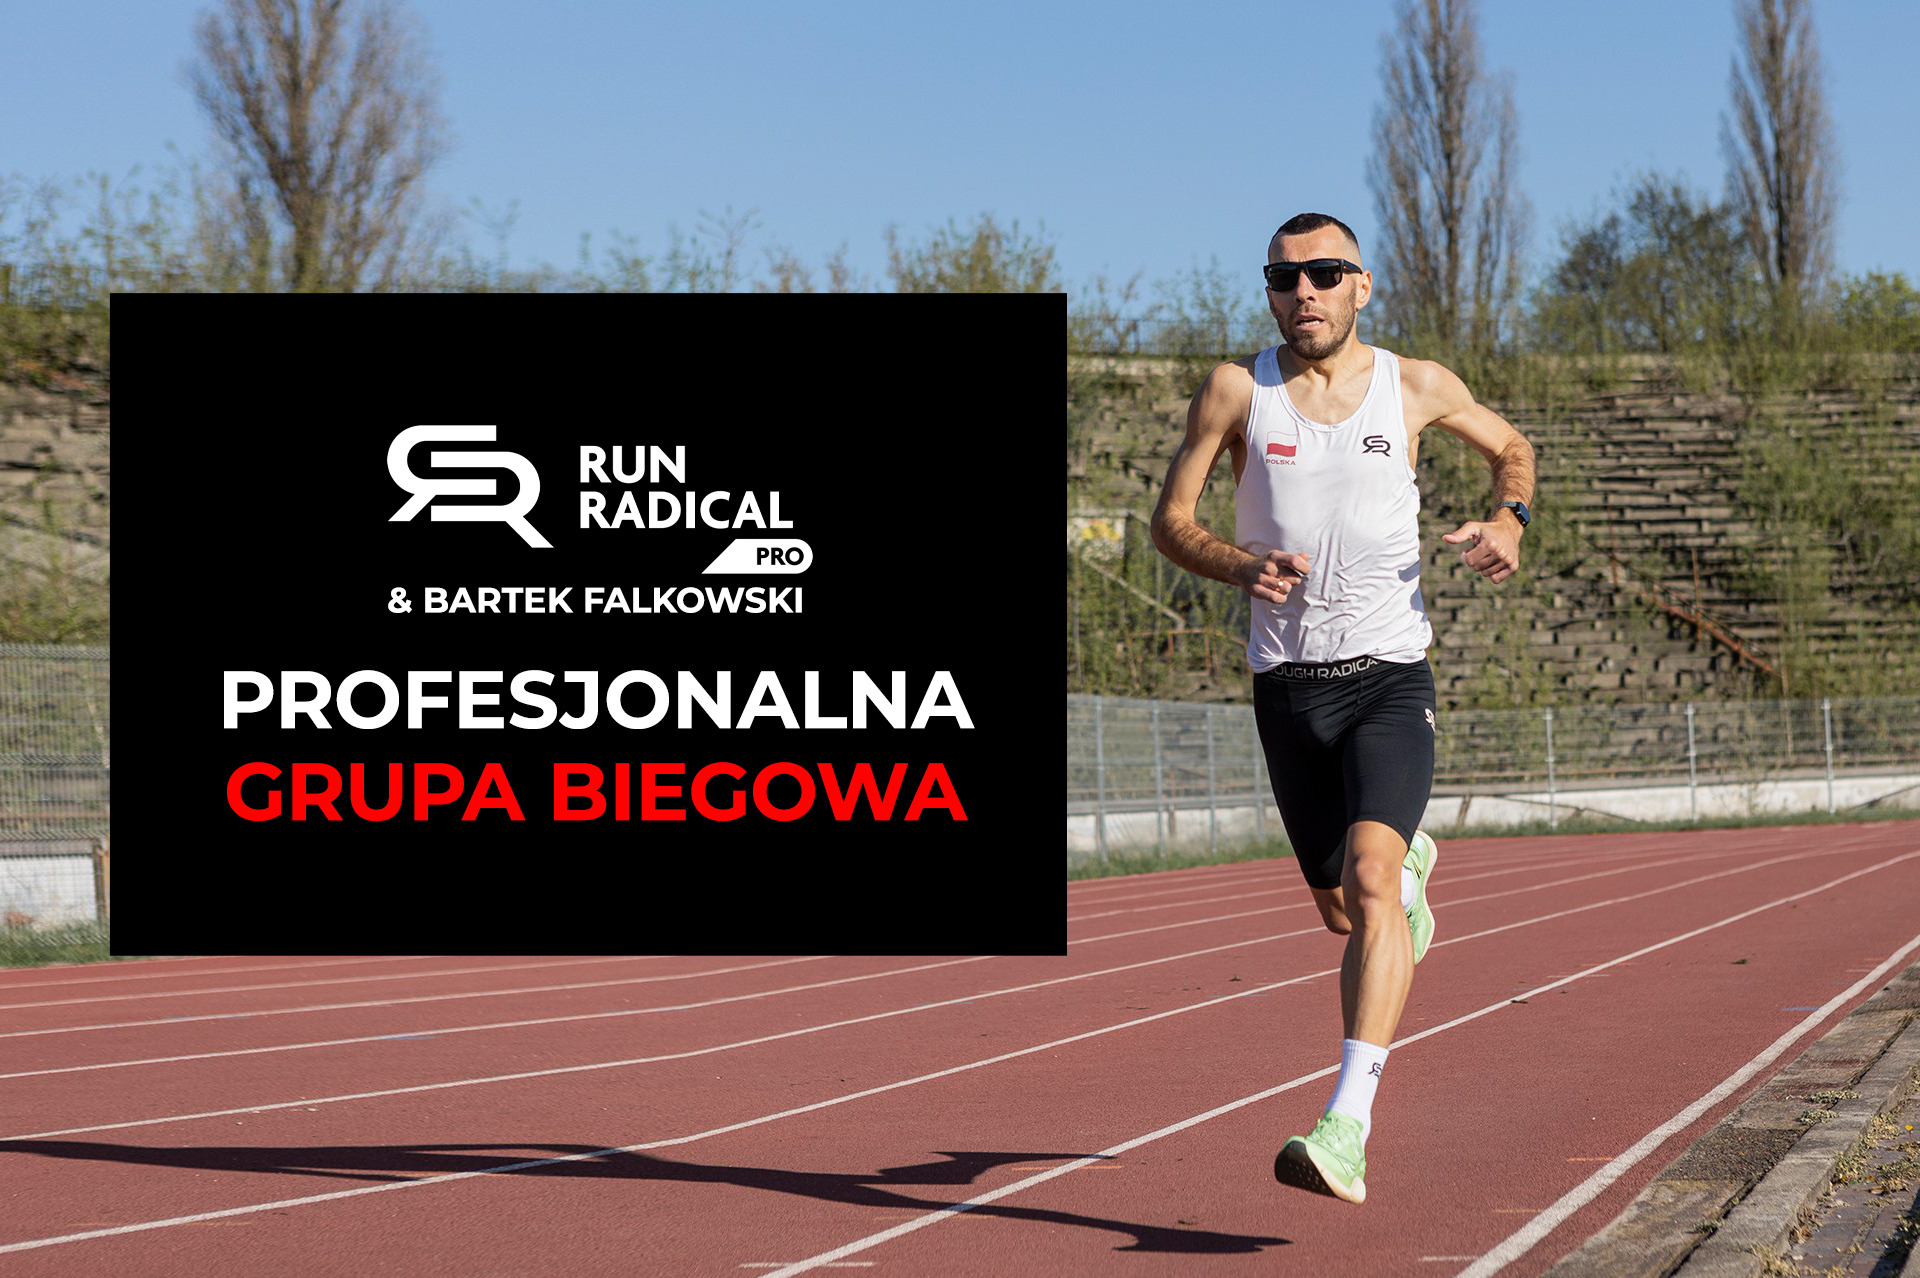 Dołącz do pierwszej profesjonalnej grupy biegowej w Polsce